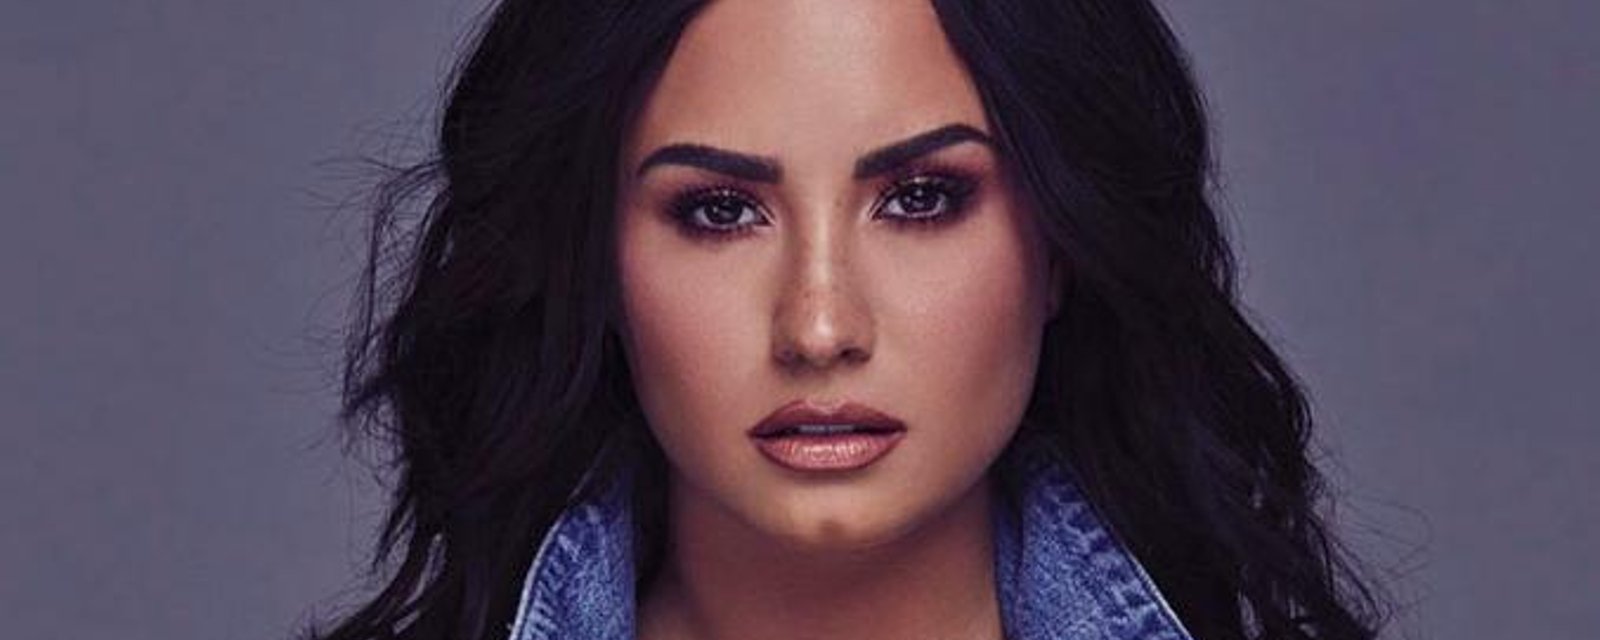 La chanteuse Demi Lovato retire tout son maquillage devant la caméra et le résultat parle de lui-même!